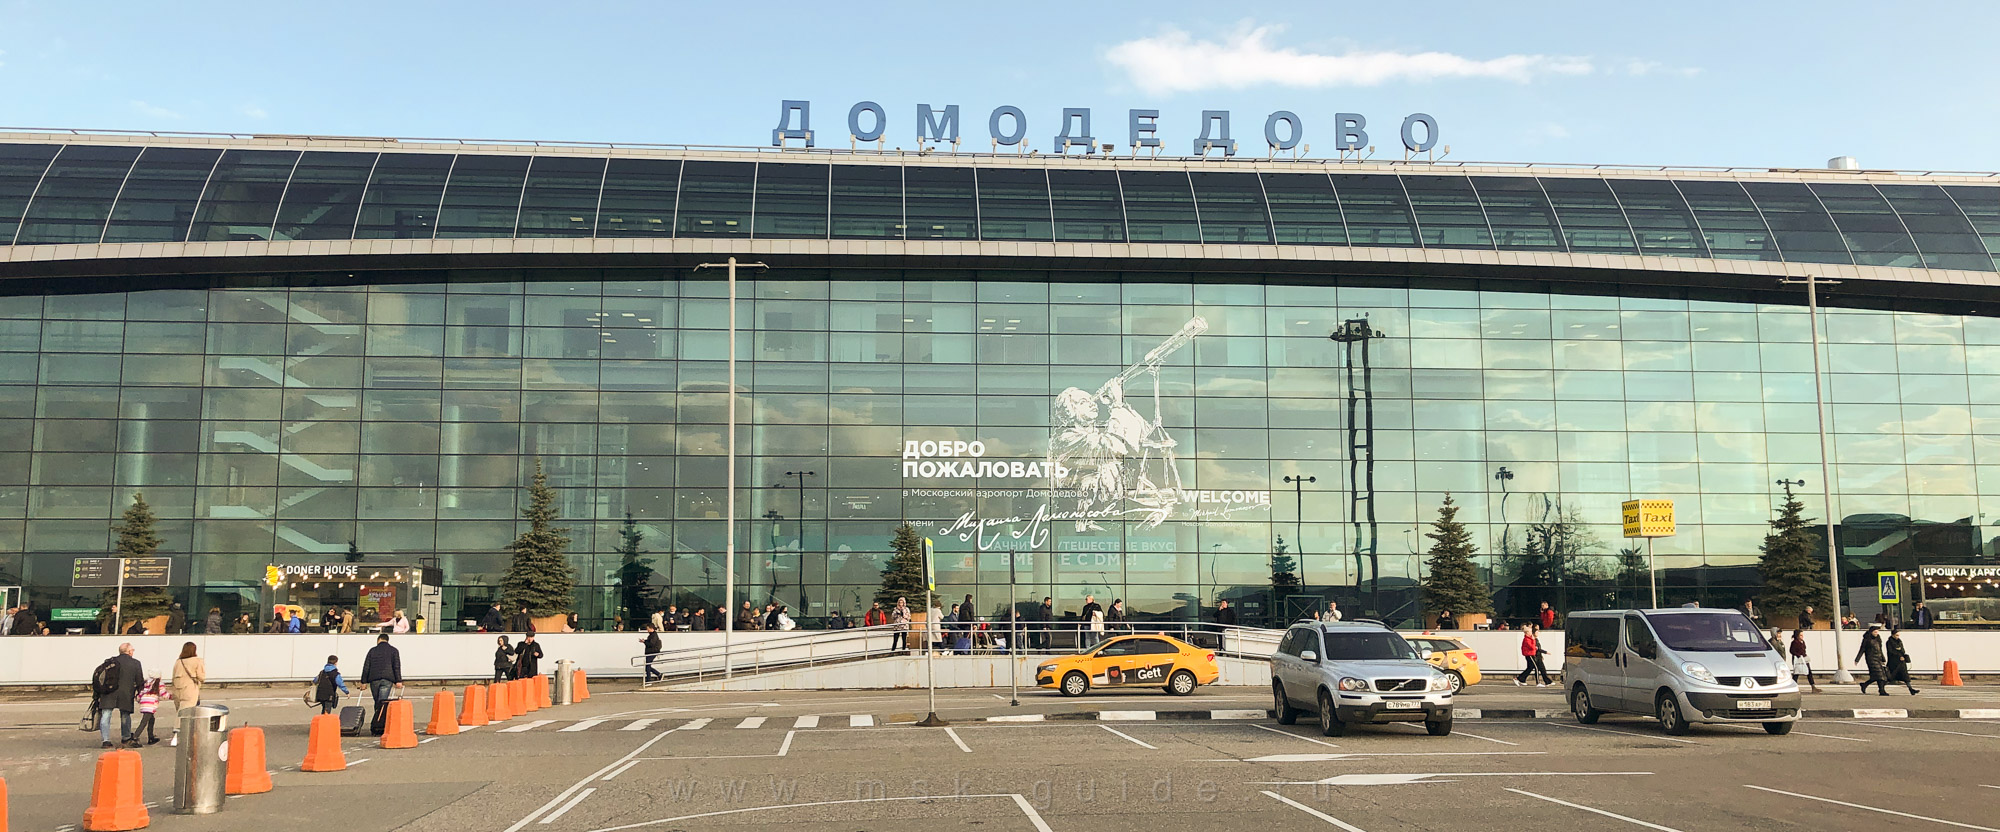 Московский аэропорт Домодедово имени М.В. Ломоносова